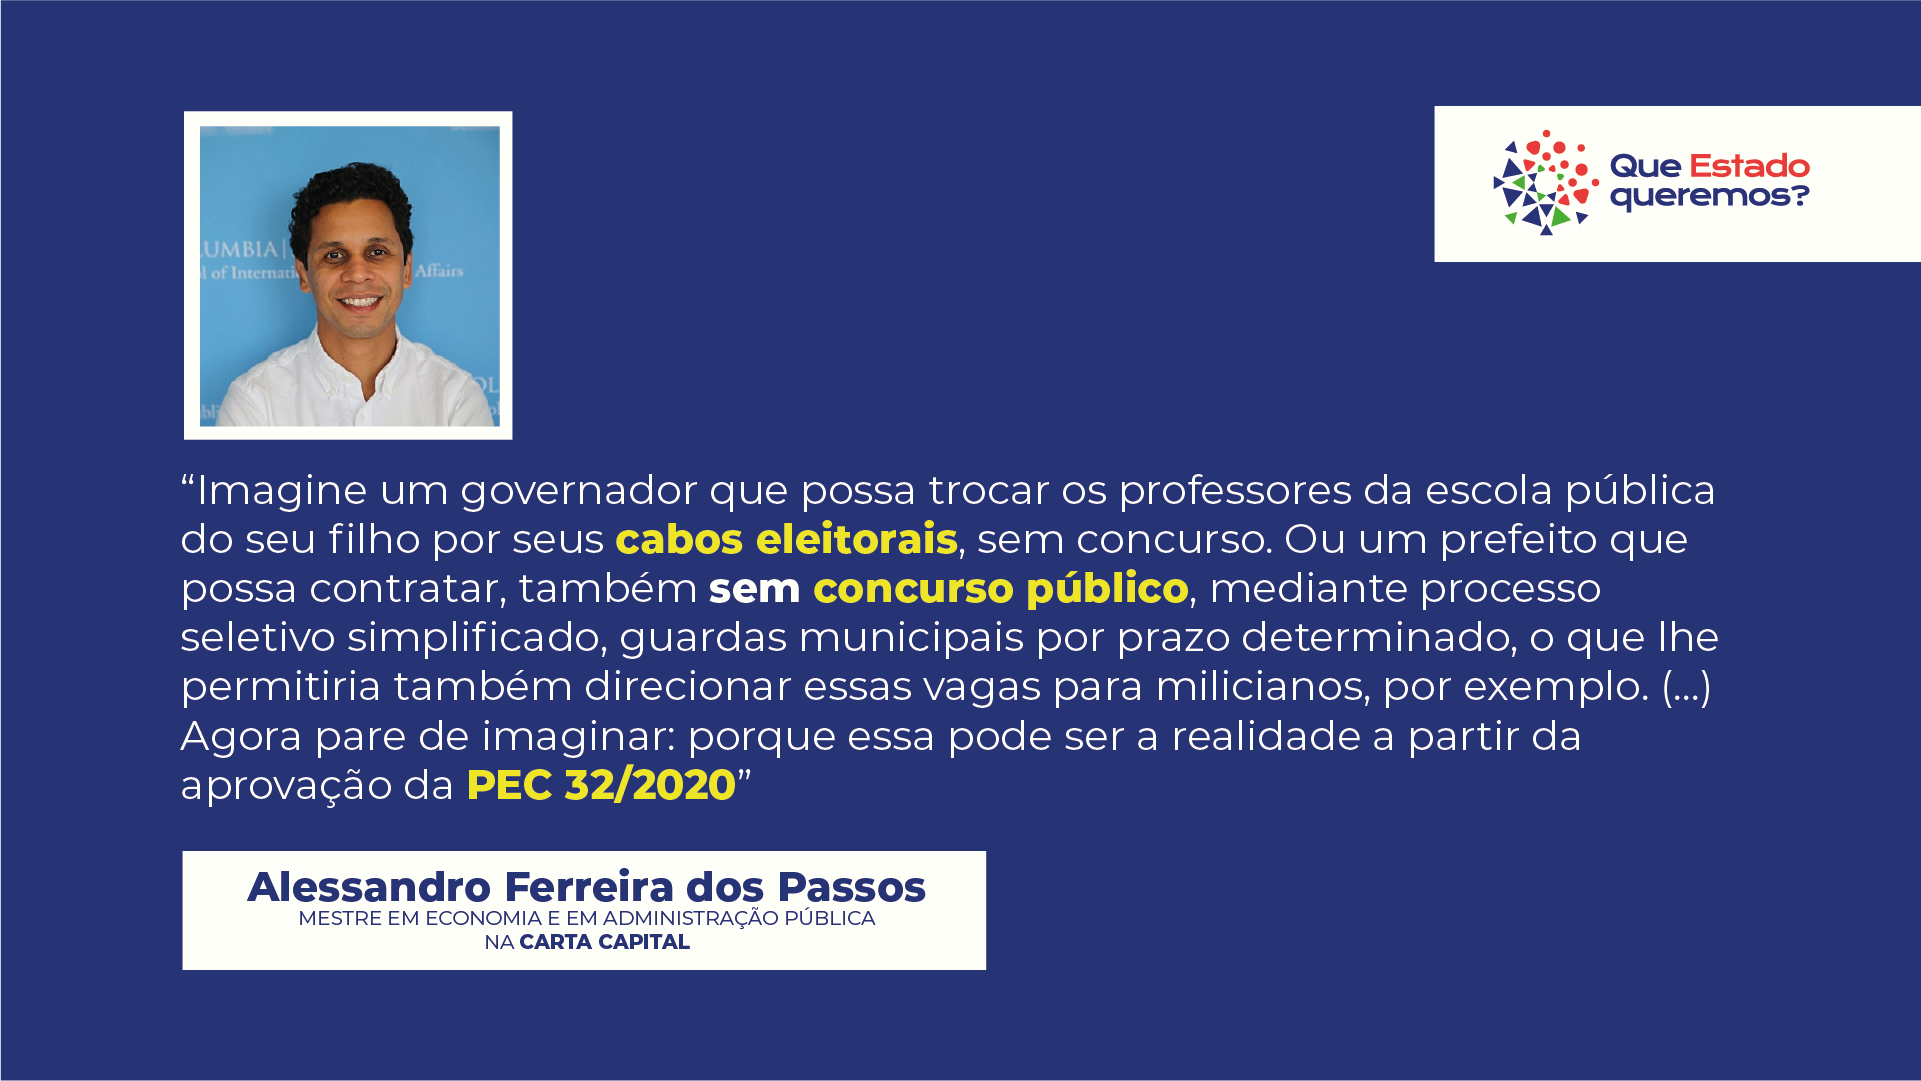 Alessandro Ferreira dos Passos critica a PEC 32/2020 em texto na Carta Capital